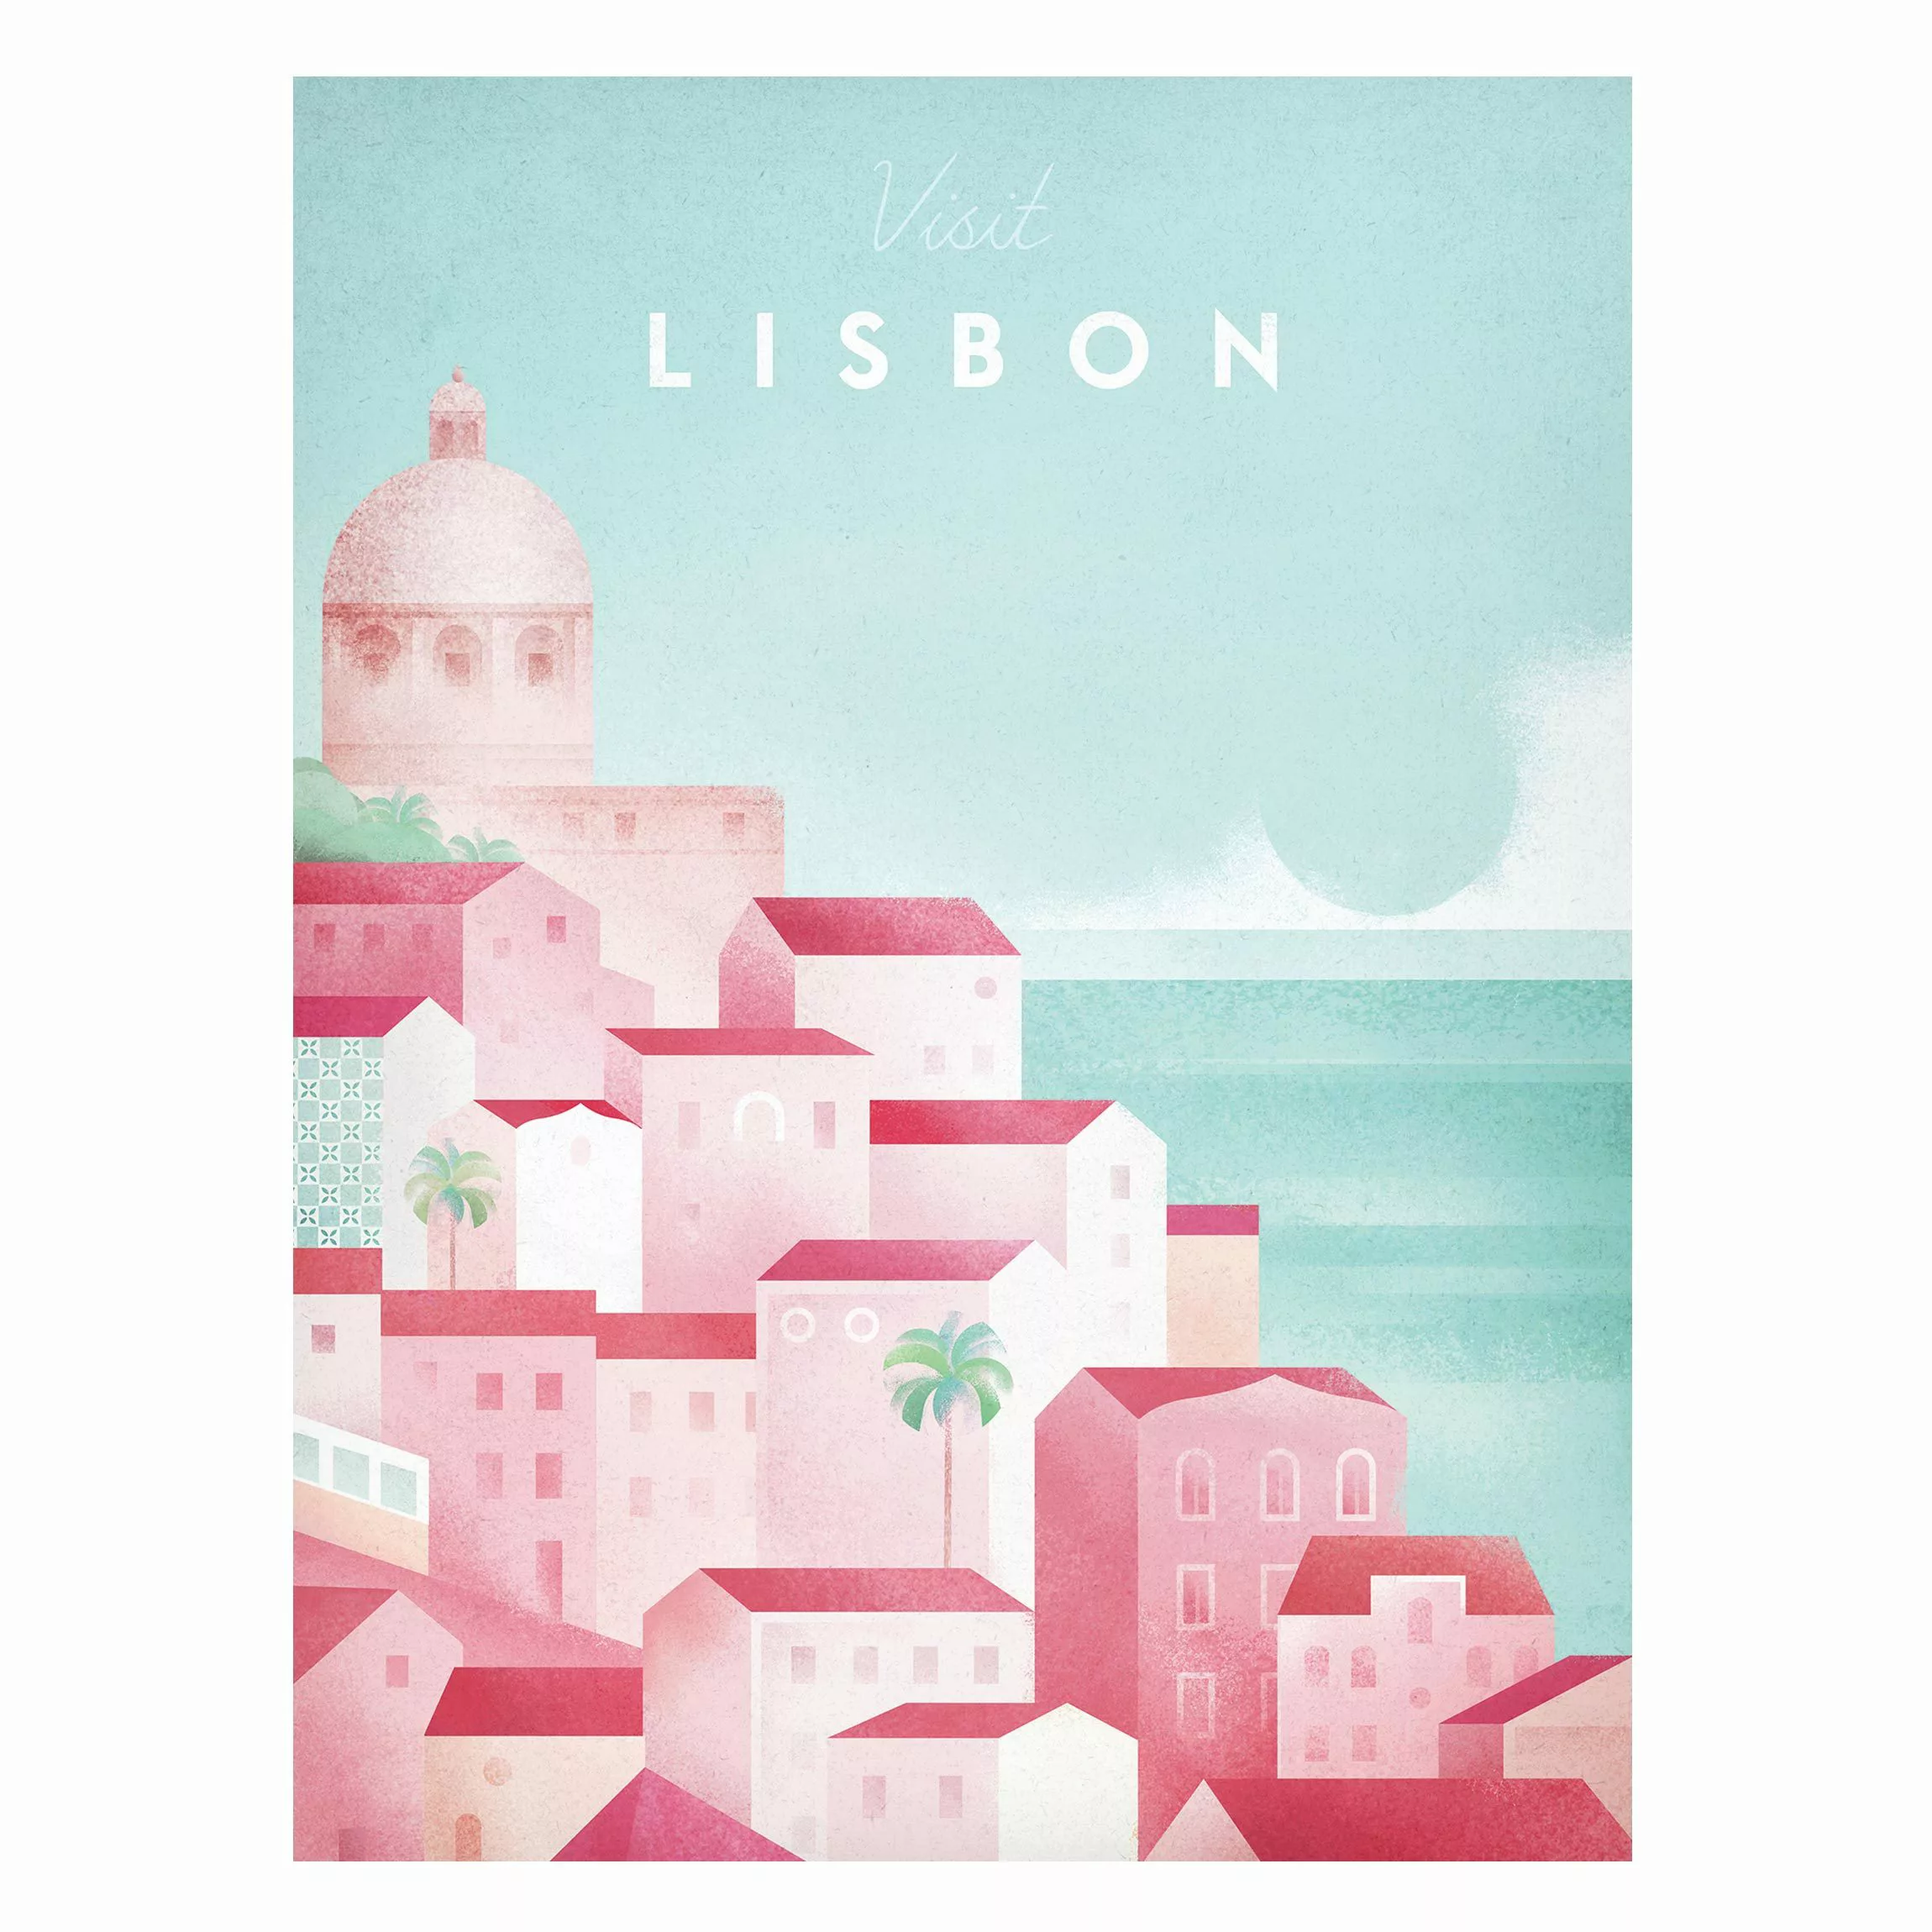 Magnettafel Strand - Hochformat 3:4 Reiseposter - Lissabon günstig online kaufen